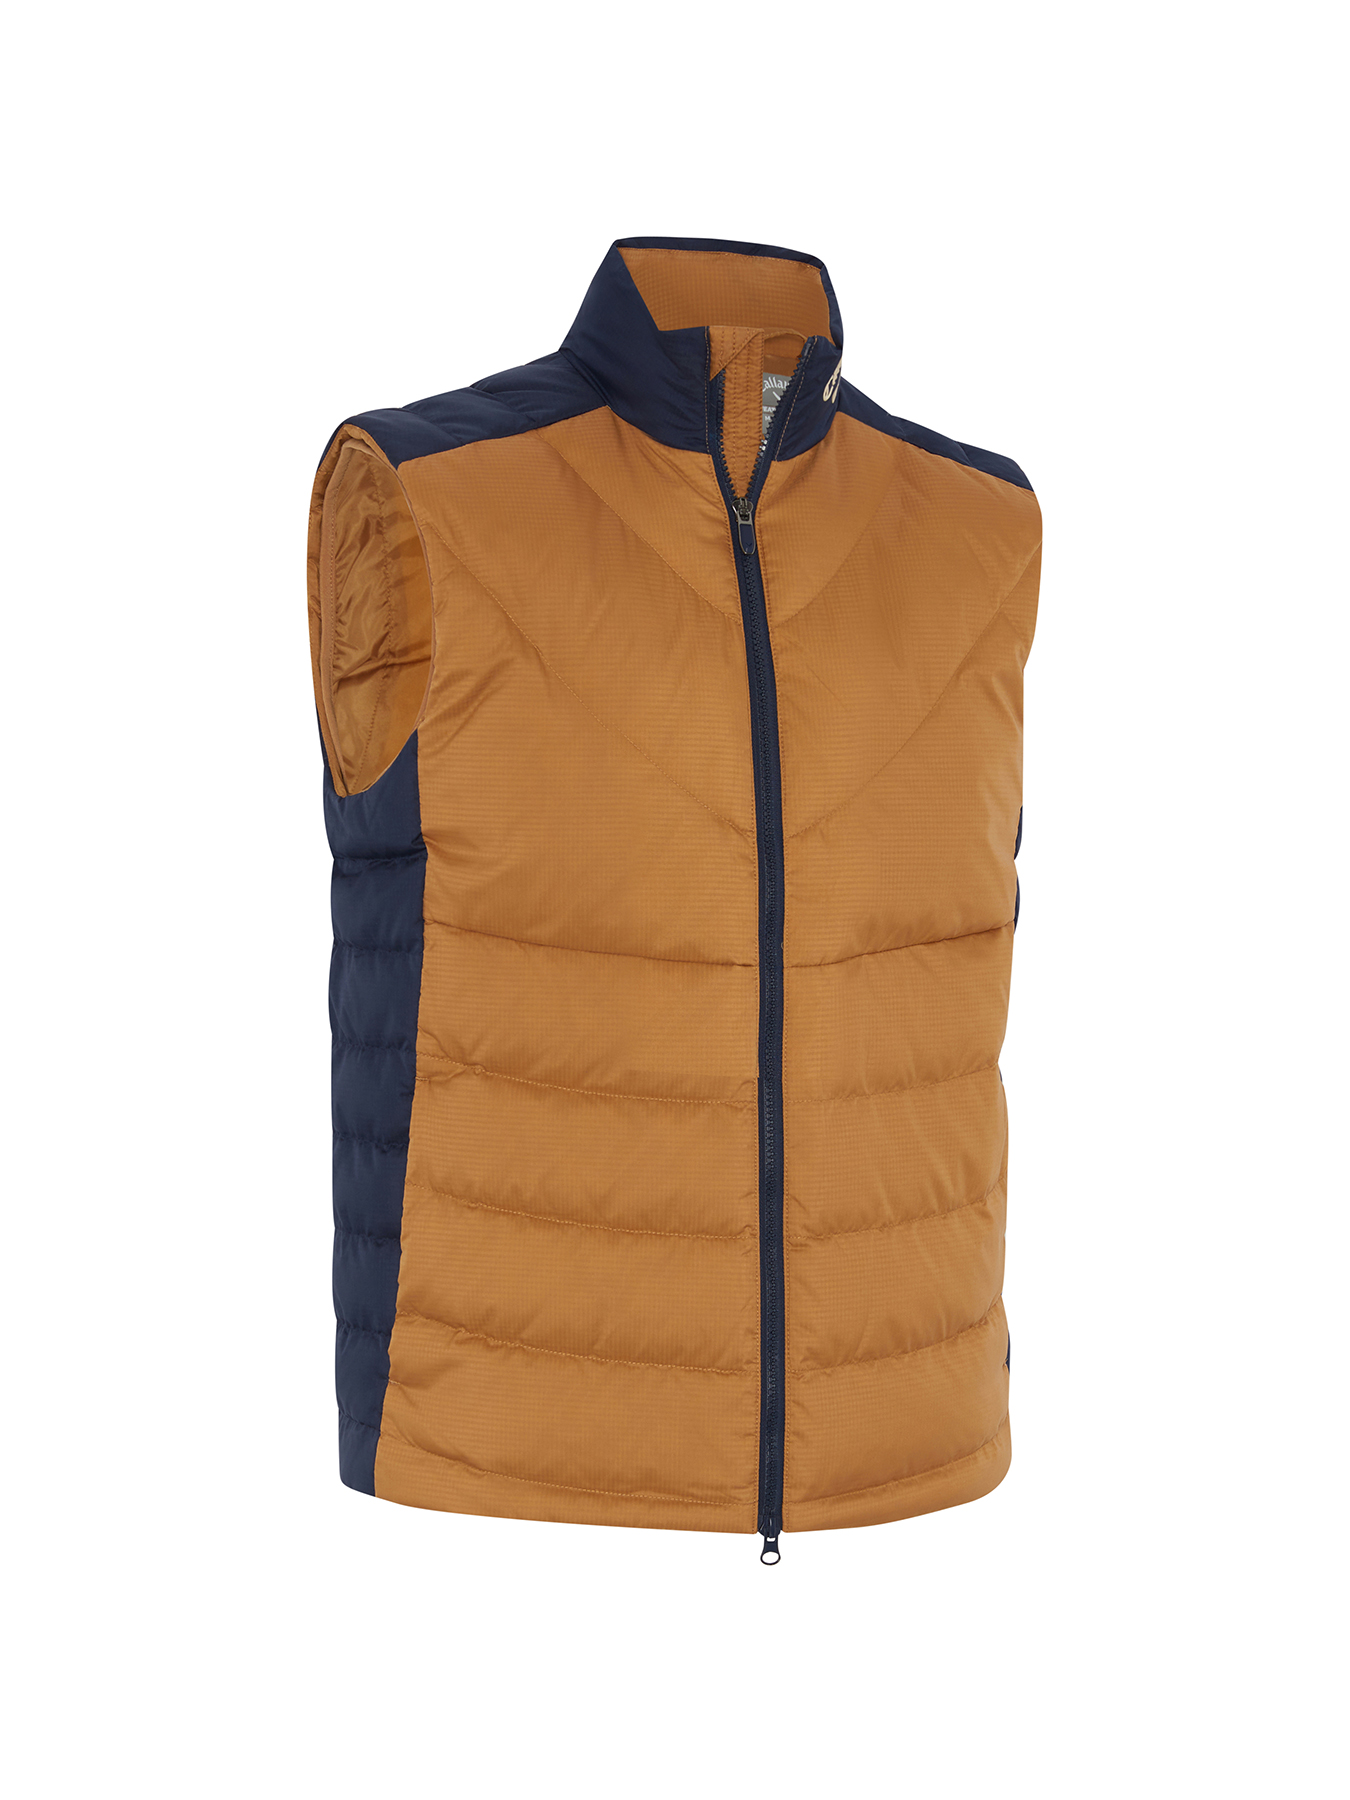 Callaway Primaloft Premium pánská golfová vesta, hnědá/tmavě modrá, vel. XL